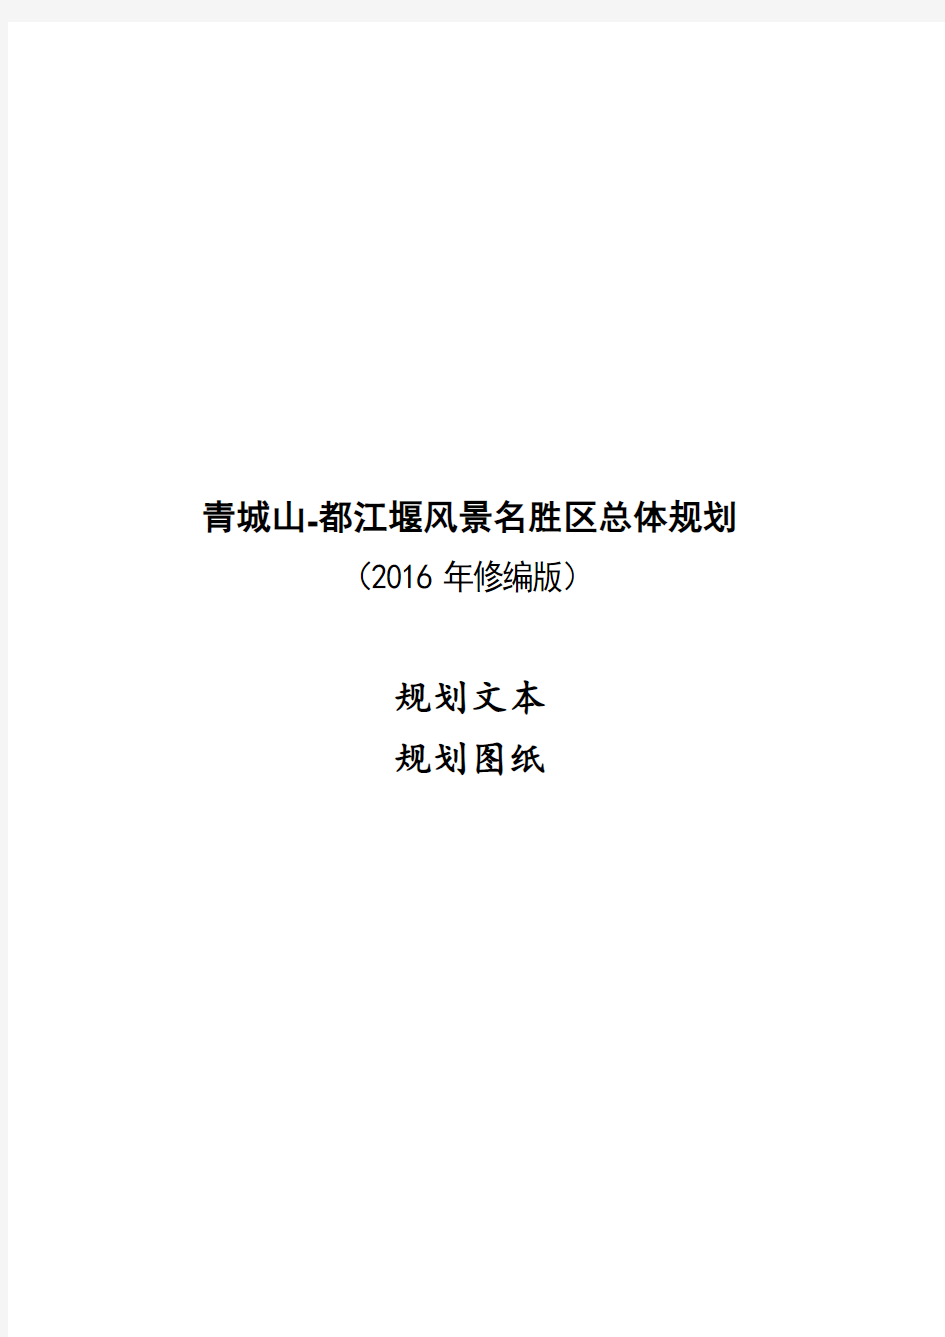 青城山-都江堰风景名胜区总体规划(2016—2030)(2016年修编版)